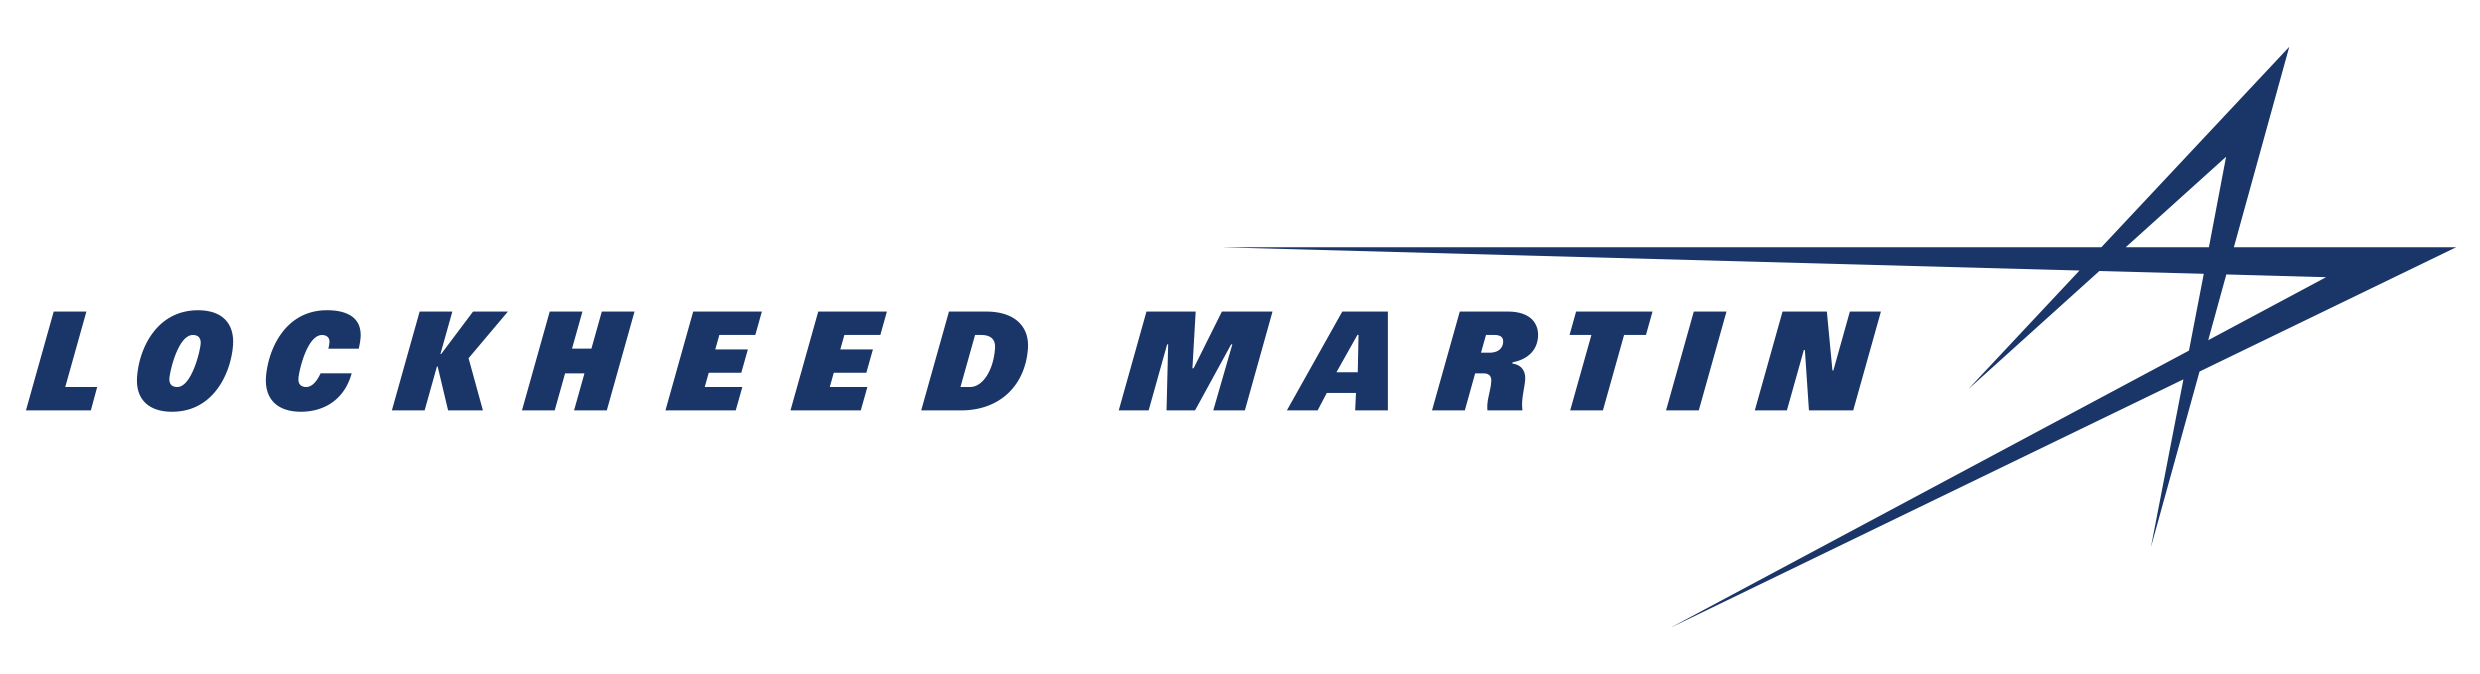 Lockheed Martin Aerospace Logo - Lockheed Martin Corporation | Lockheed Martin